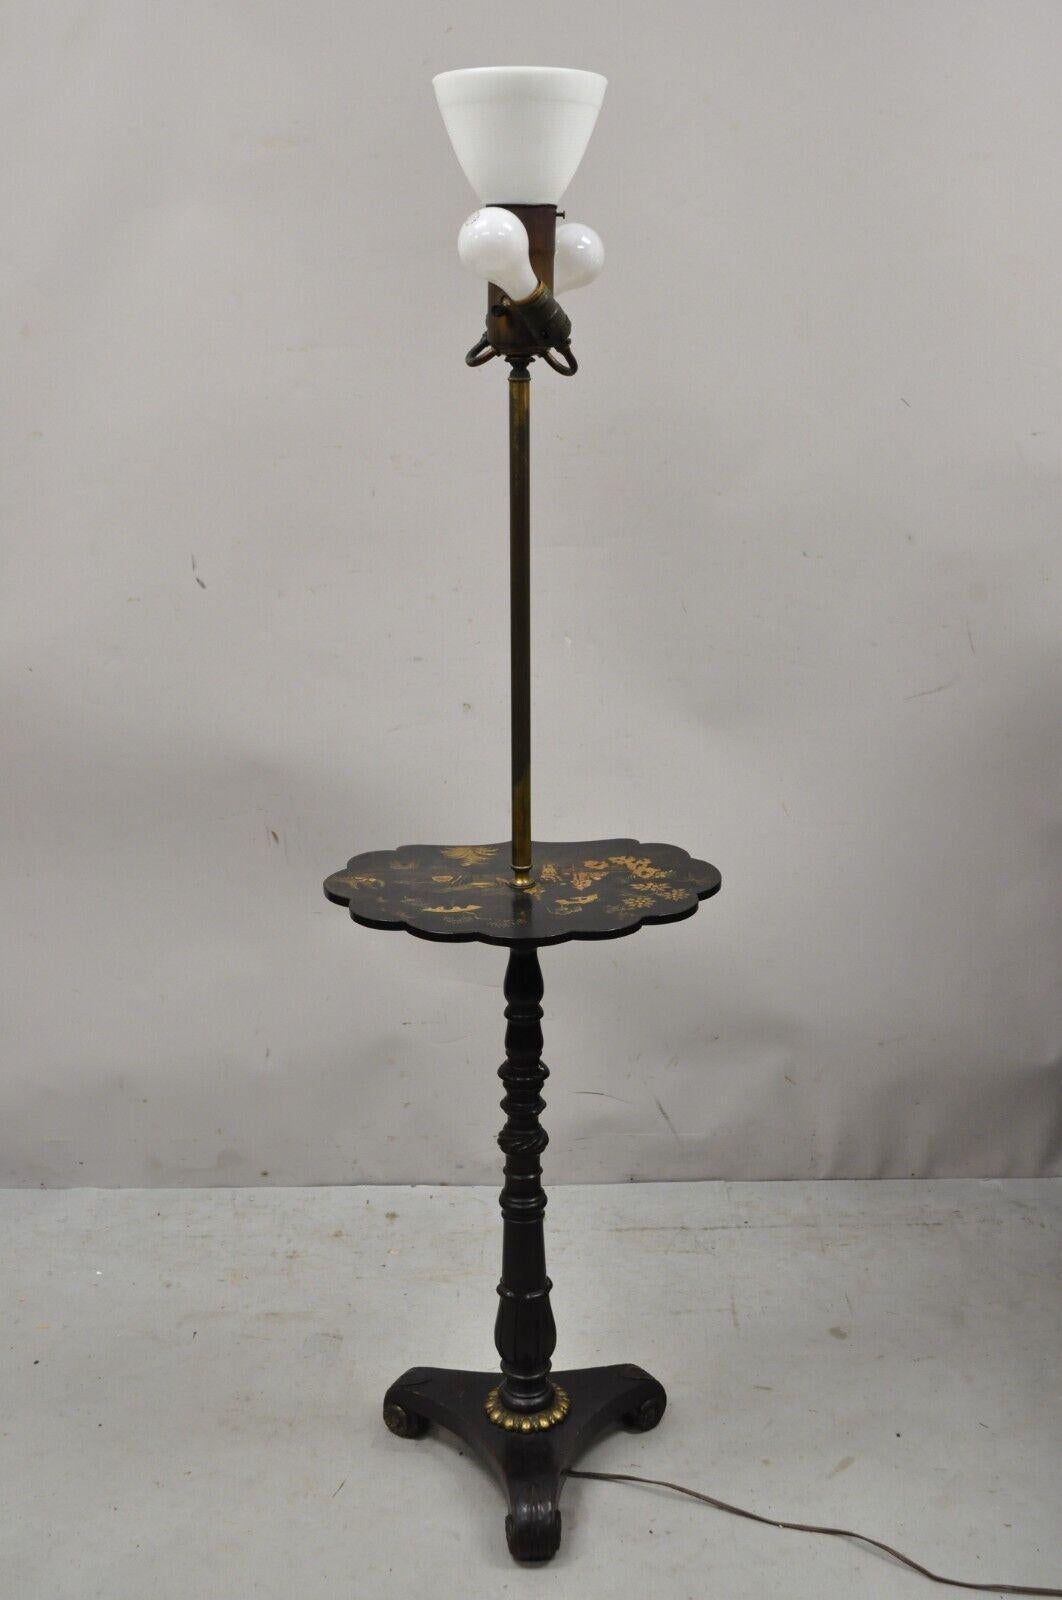 Ancien lampadaire anglais victorien laqué chinoiserie avec table festonnée. Cette pièce est composée d'un socle tripode en acajou sculpté, d'accents dorés, d'un plateau à bord festonné peint à la main avec des scènes asiatiques et d'un diffuseur de